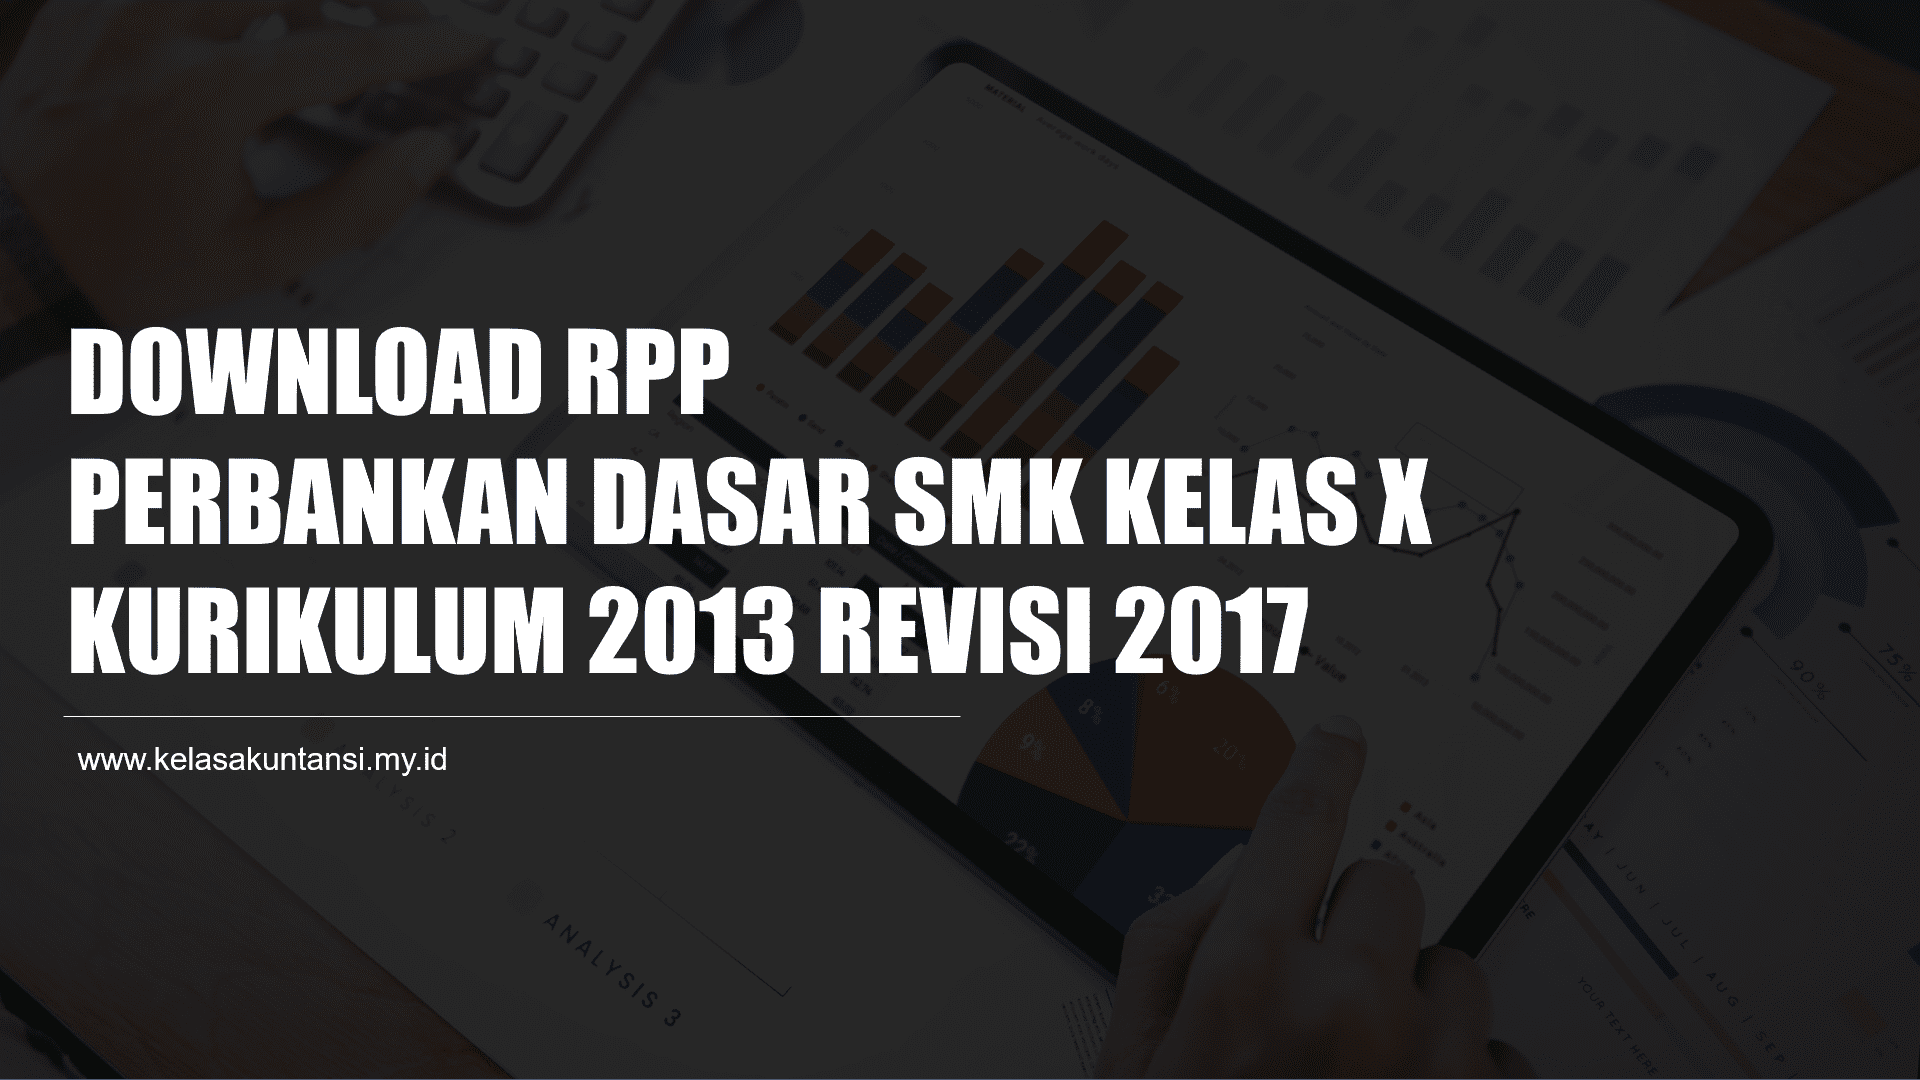 Download RPP Perbankan Dasar SMK Kelas X Kurikulum 2013 Lengkap